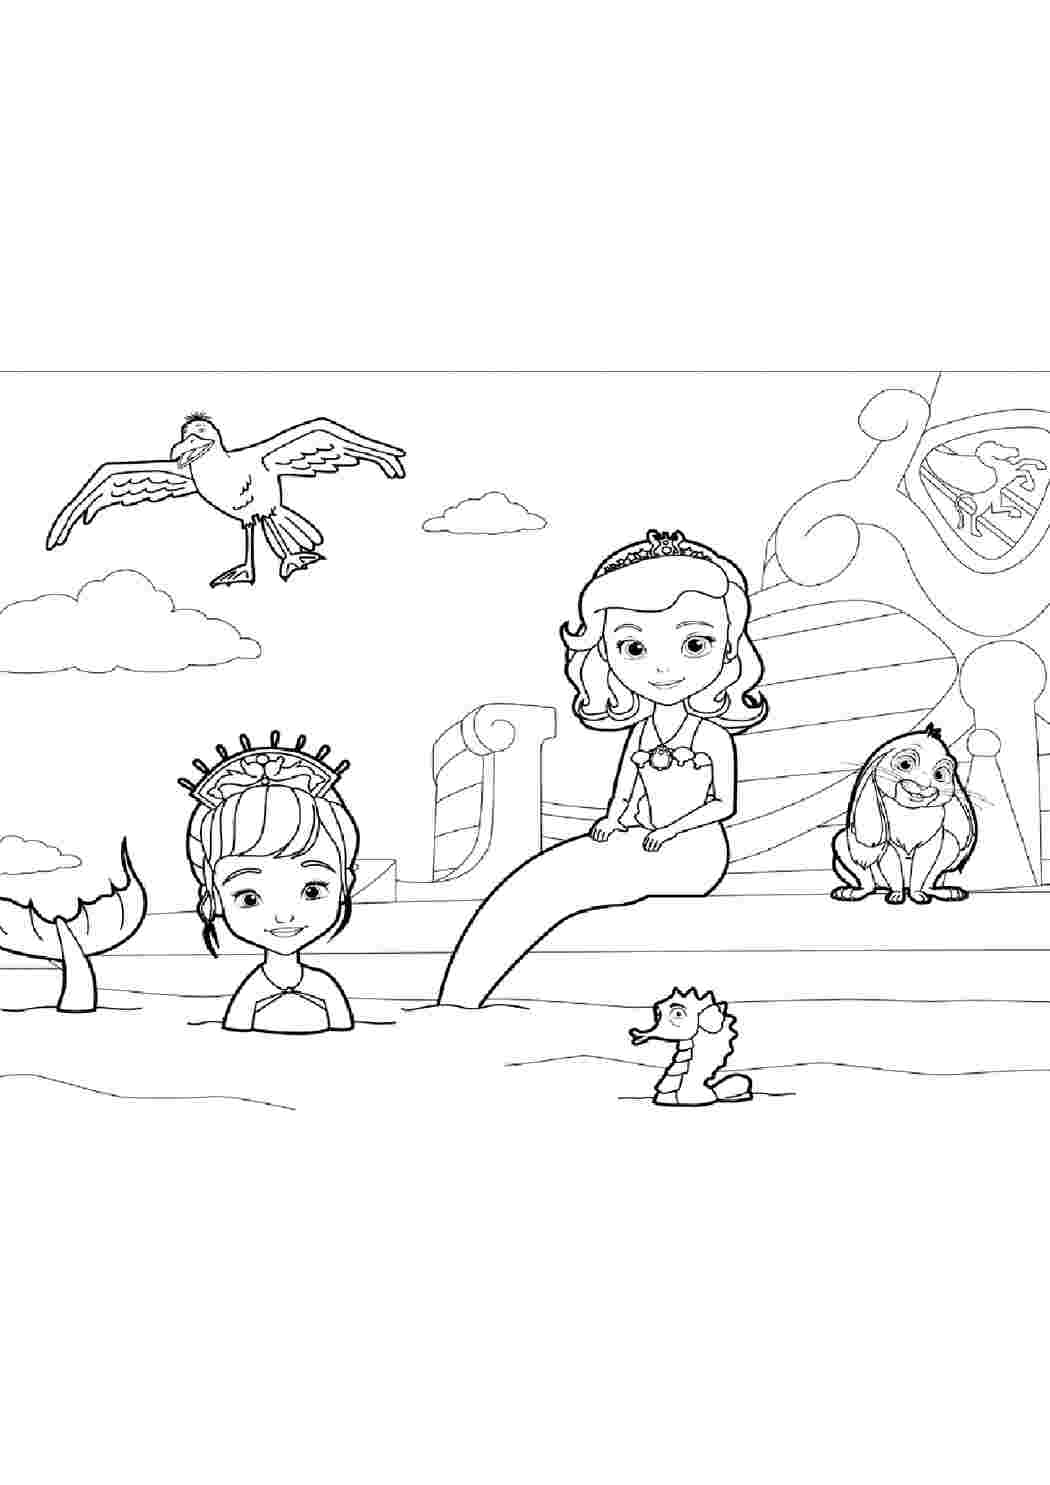 Раскраски  раскраски с принцессой София для детей   раскраски на тему принцесса София для мальчиков и девочек. Интересные раскраски с персонажами мультфильма про принцессу Софию для детей    